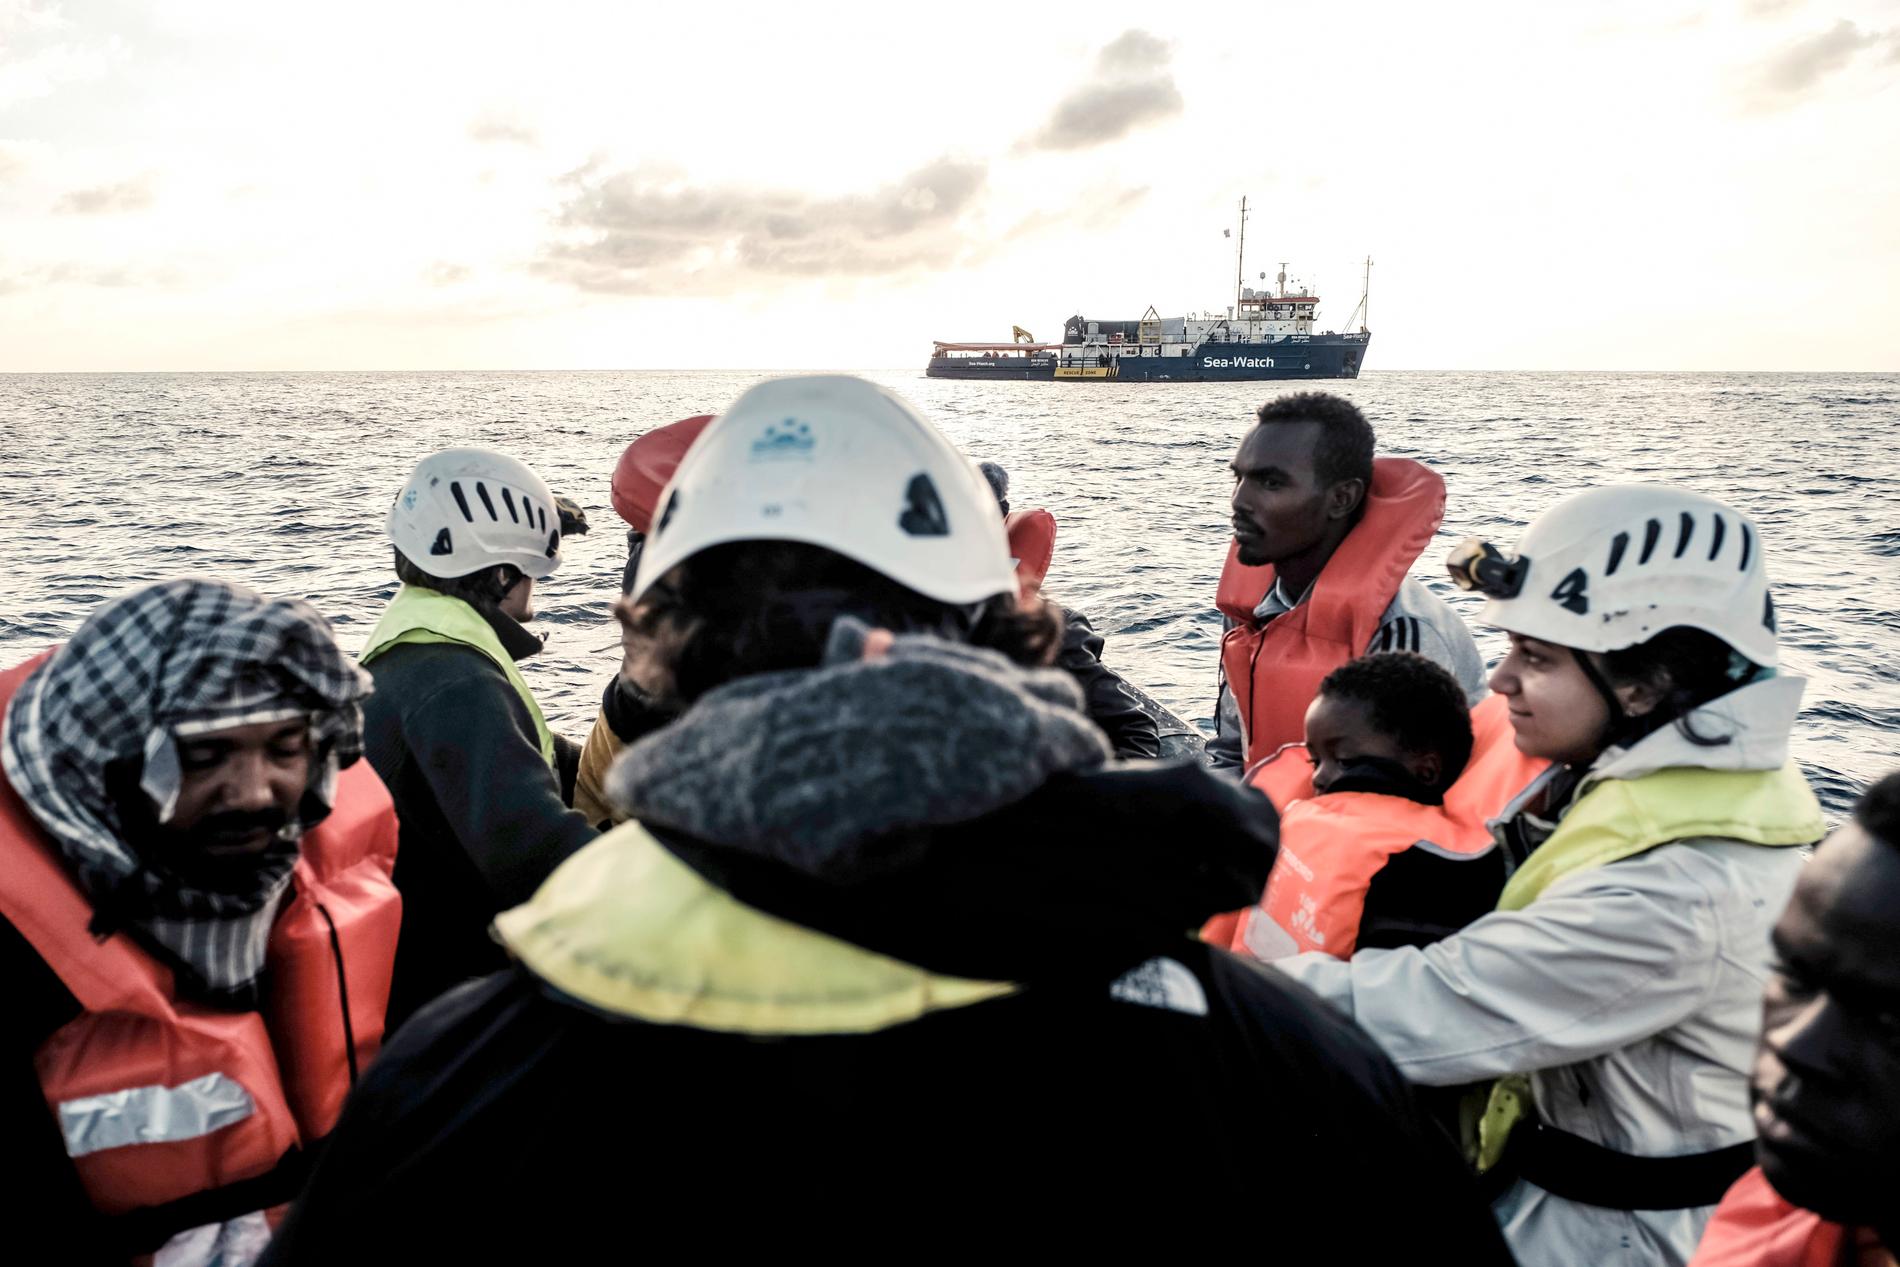 Det humanitära räddningsfartyget Sea Watch 3 (som syns i bildens bakgrund) har legat ute till sjöss sedan den 22 december och har nekats att gå i hamn i både Italien och Malta. Arkivbild.